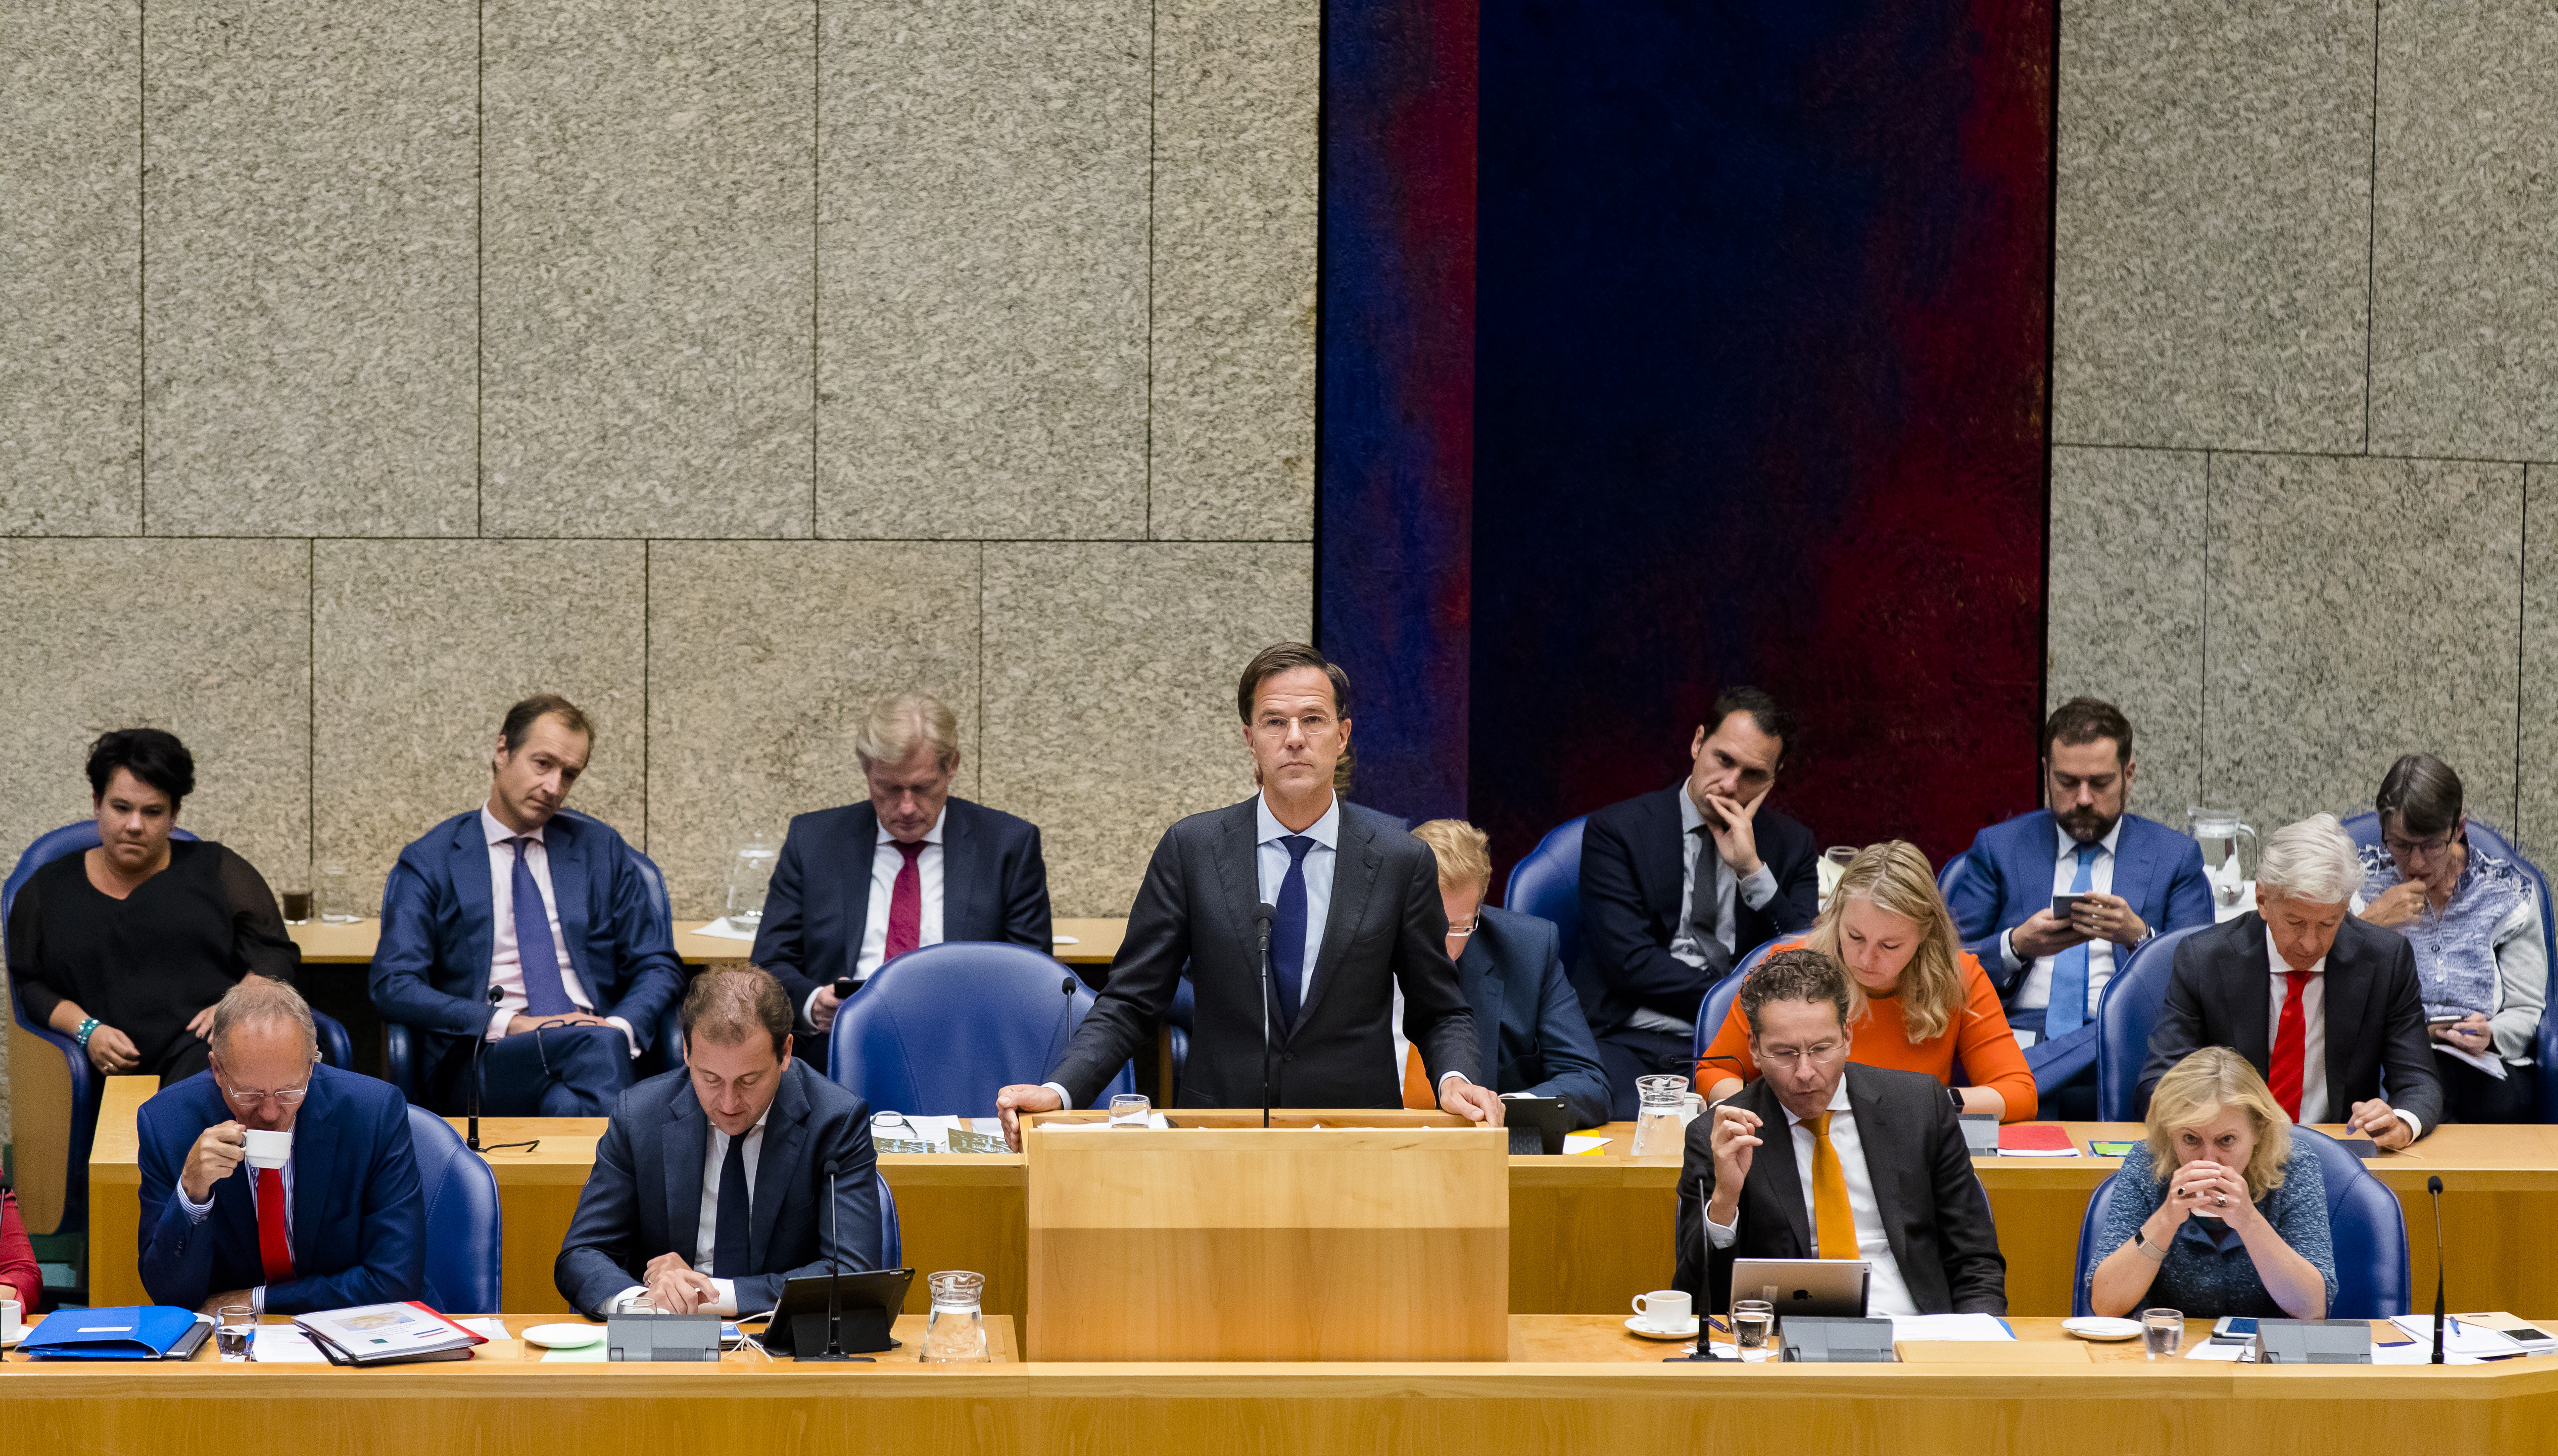 2016-09-22 15:44:09 DEN HAAG - Premier Mark Rutte in debat met de oppositie tijdens de voortzetting van de Algemene Politieke Beschouwingen, die traditioneel volgen op Prinsjesdag. ANP BART MAAT